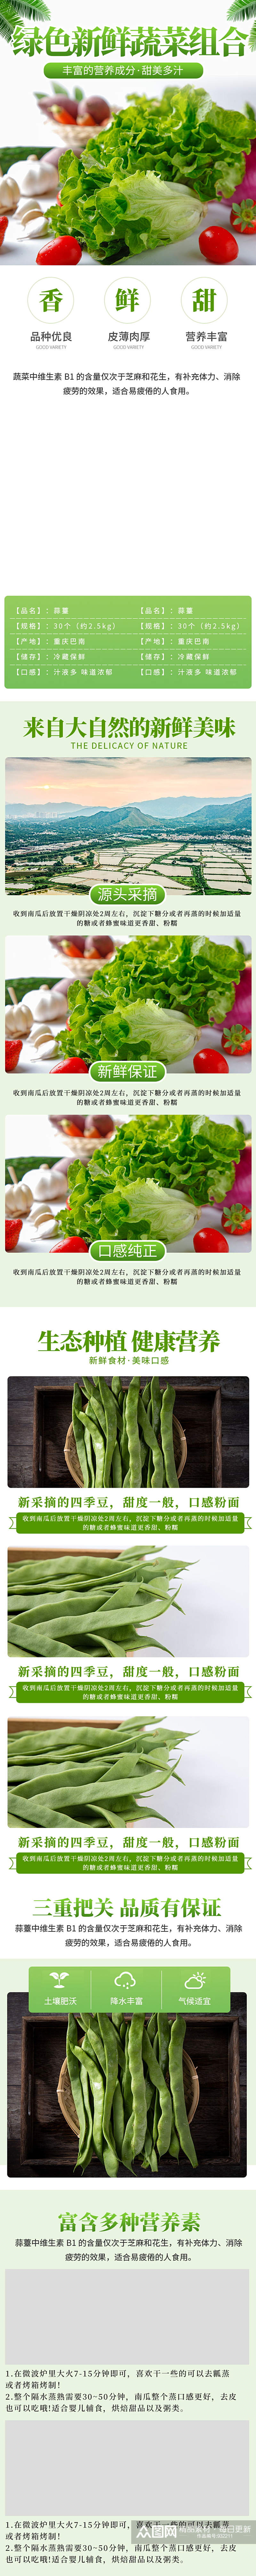 淘宝绿色新鲜蔬菜四季豆组合电商详情页素材